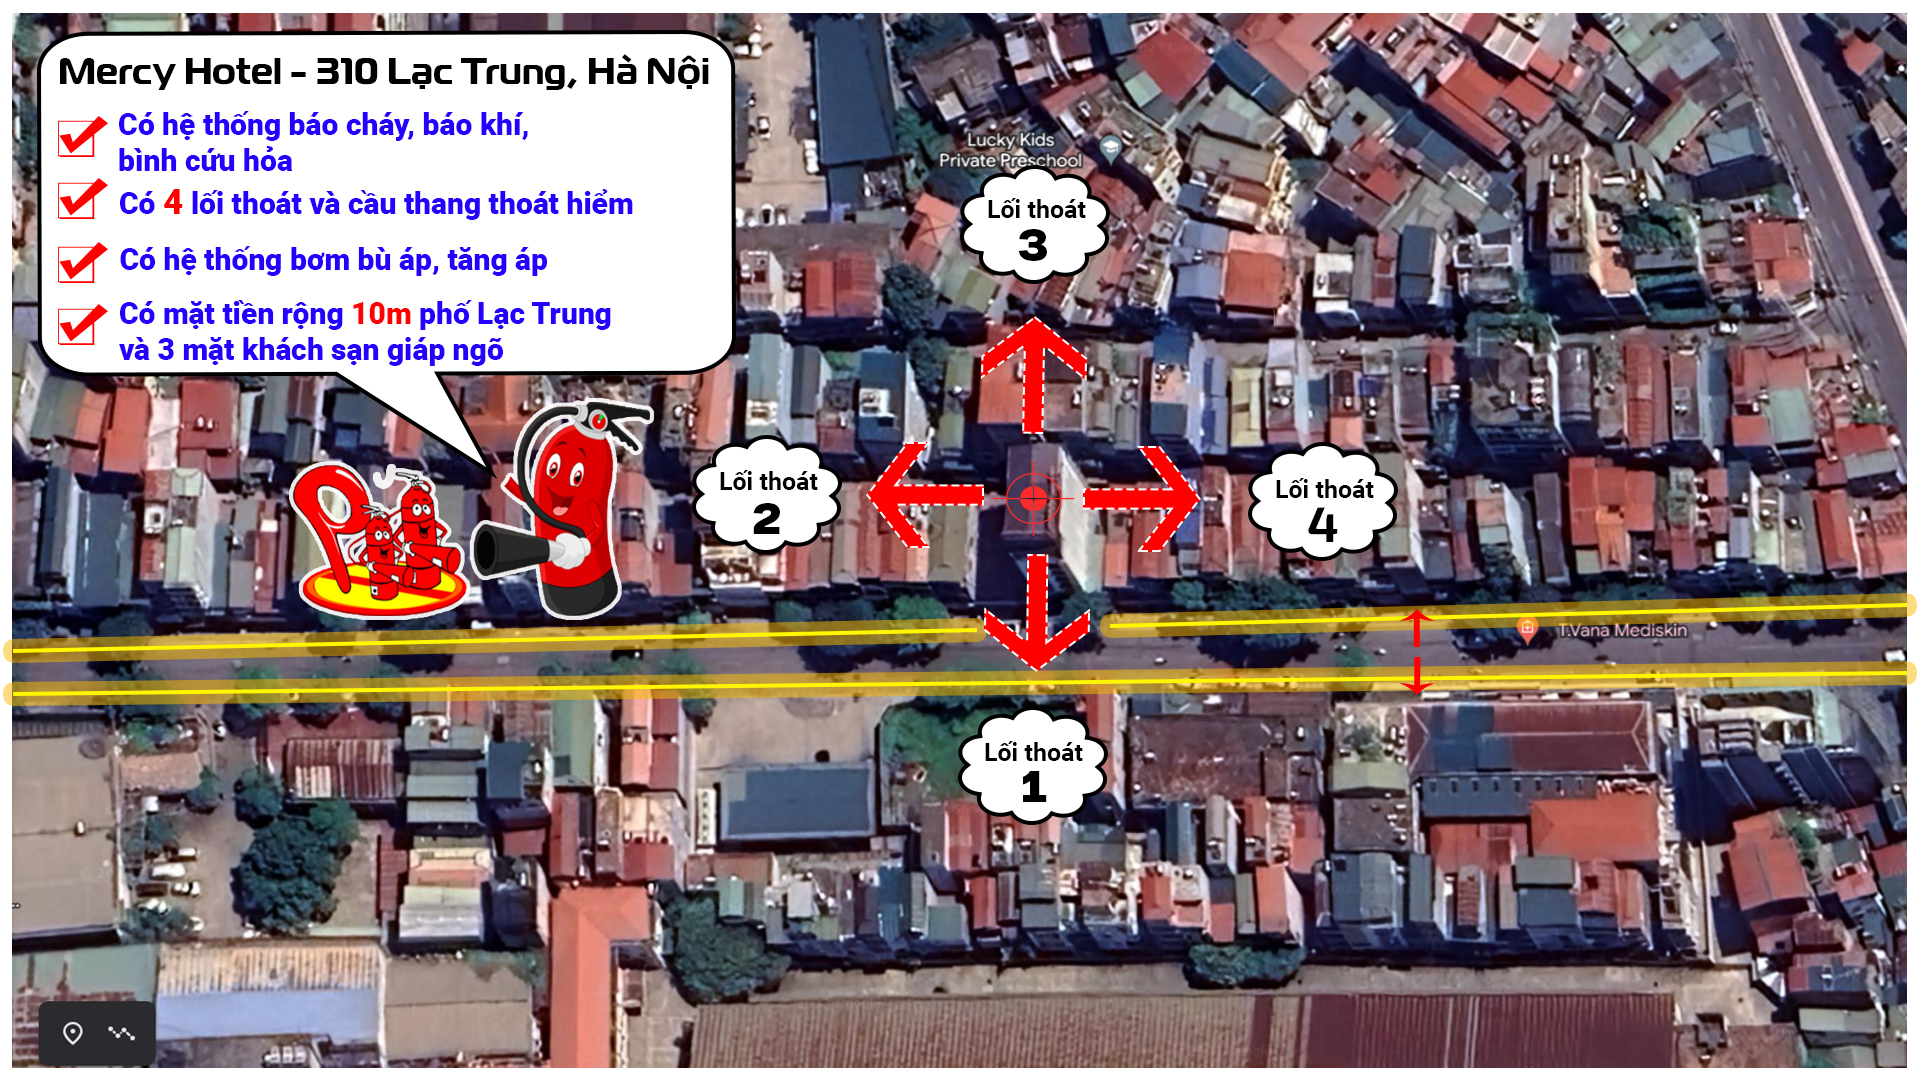 KHÁCH SẠN MERCY HOTEL | 310 Lạc Trung, Hà Nội – ĐIỂM ĐẾN AN TOÀN